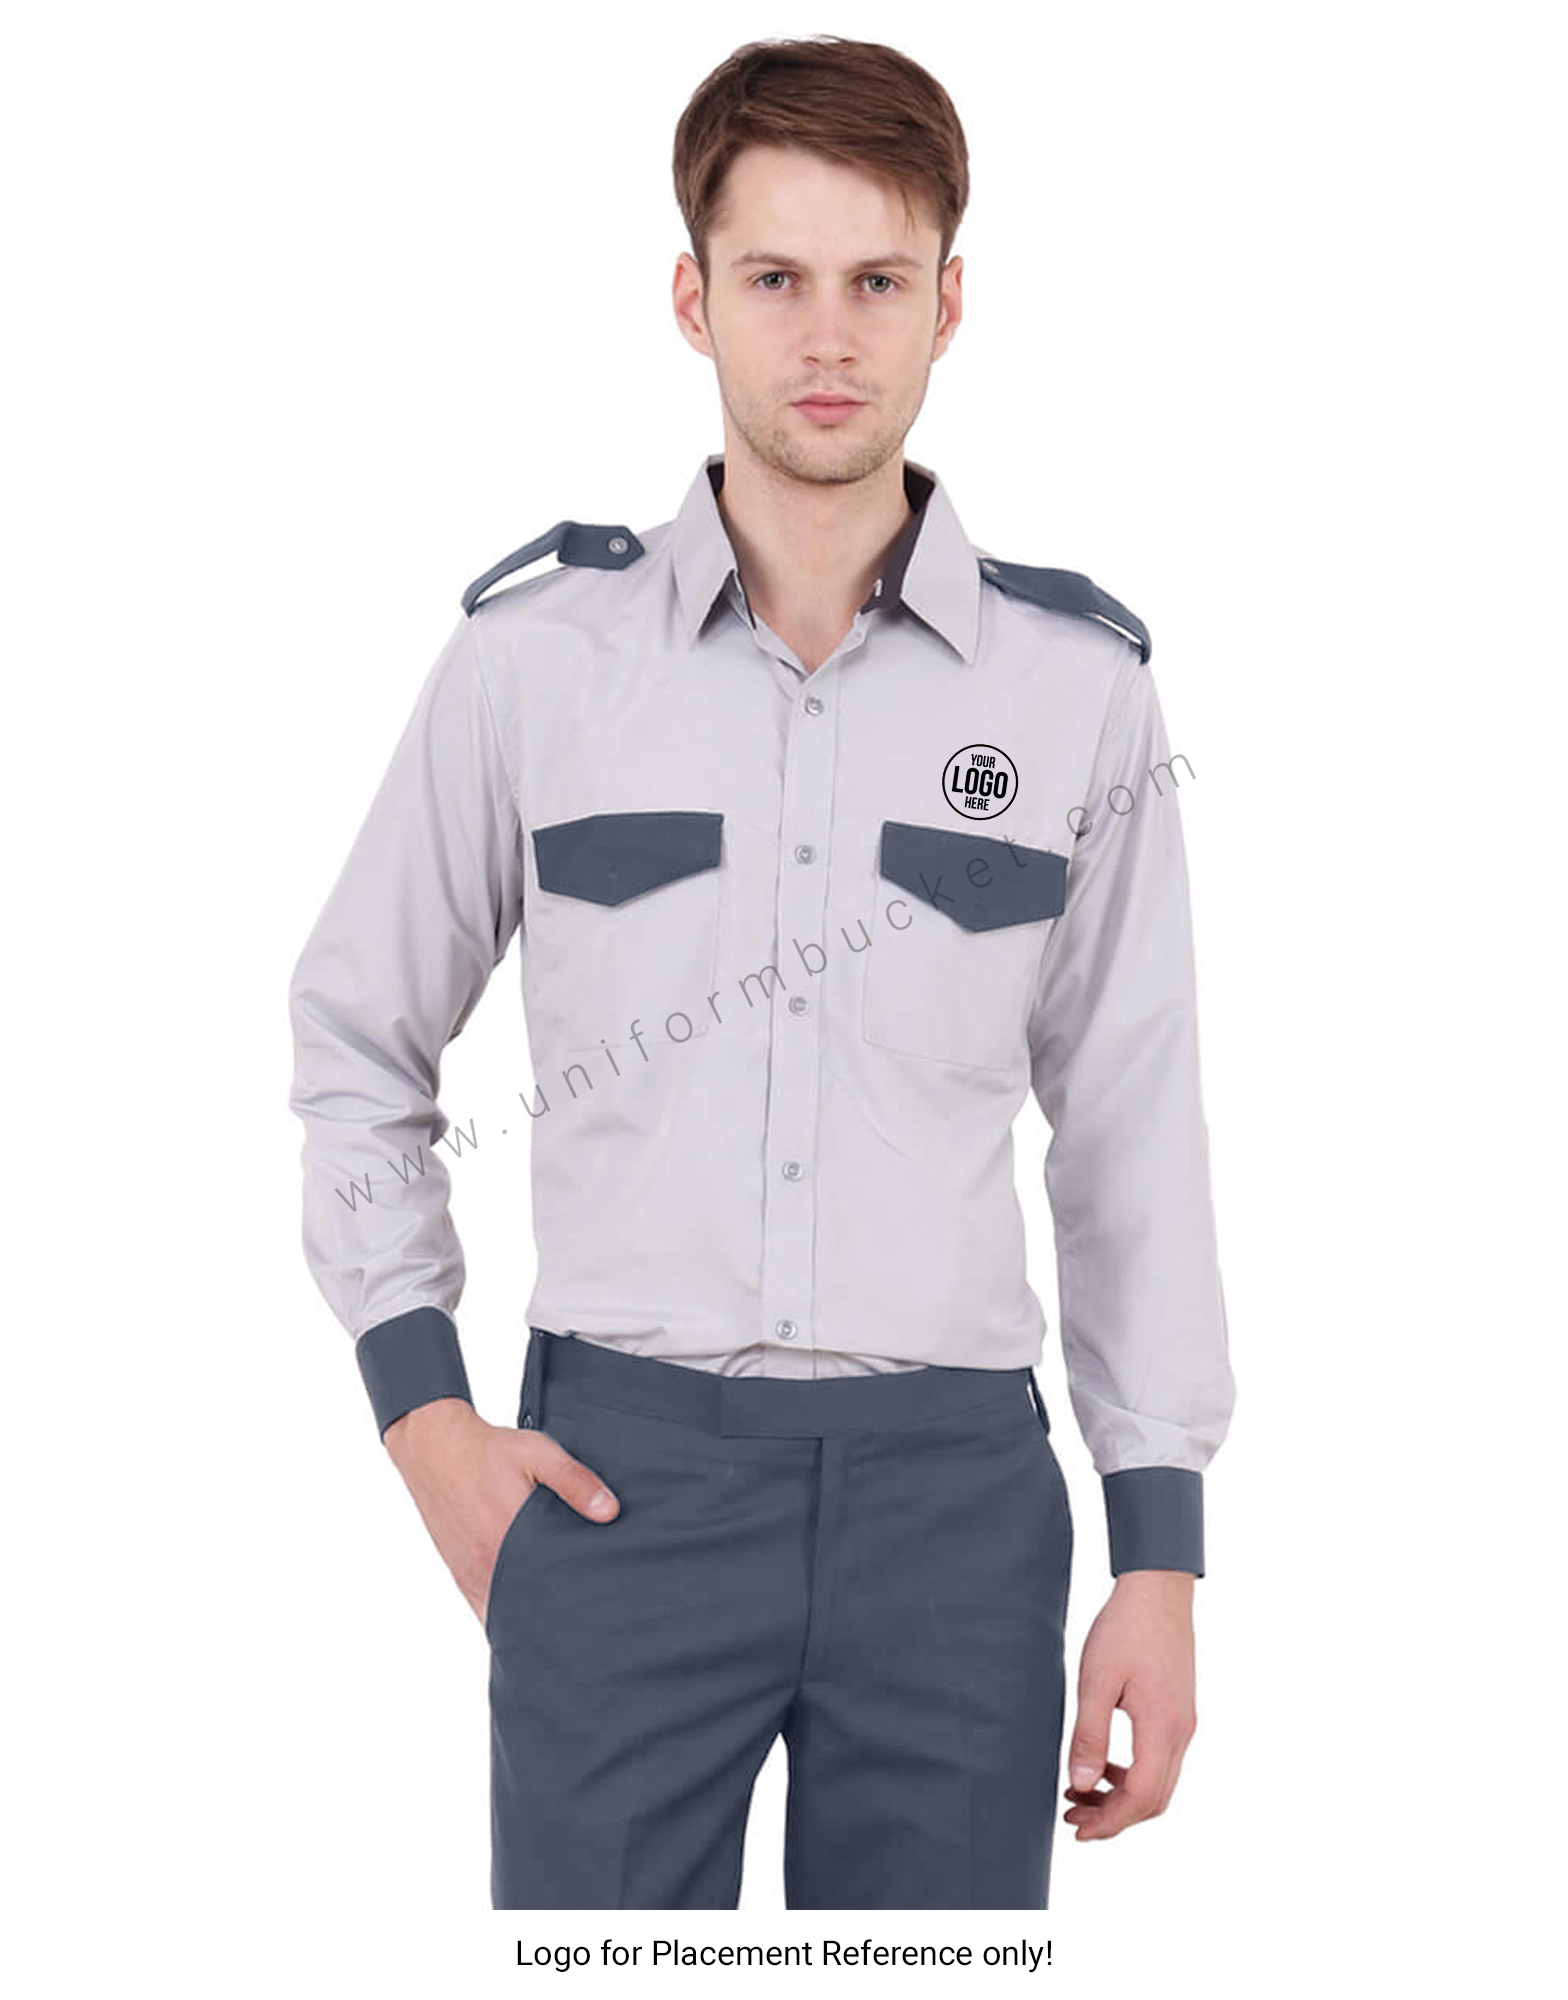 Grey Security Guard Shirt For Men